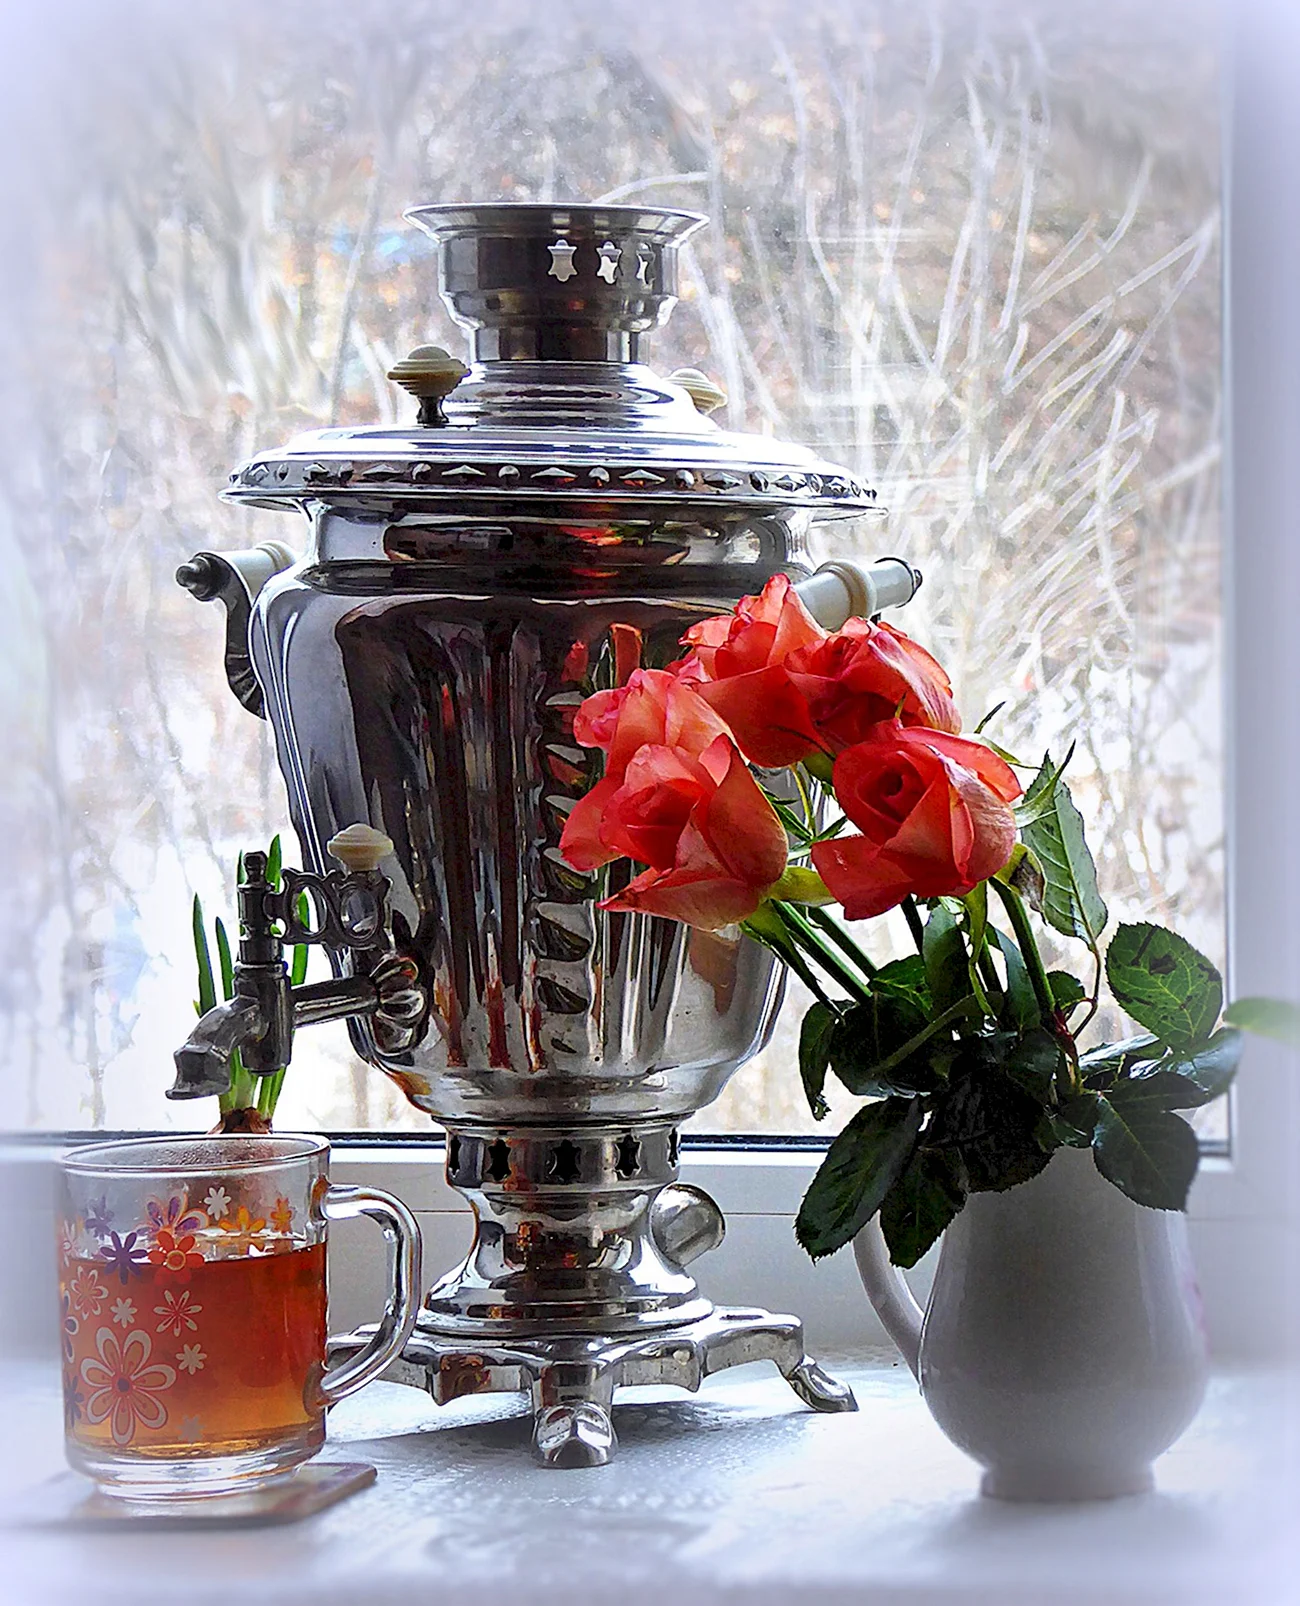 Чай из самовара зимой. Красивая картинка